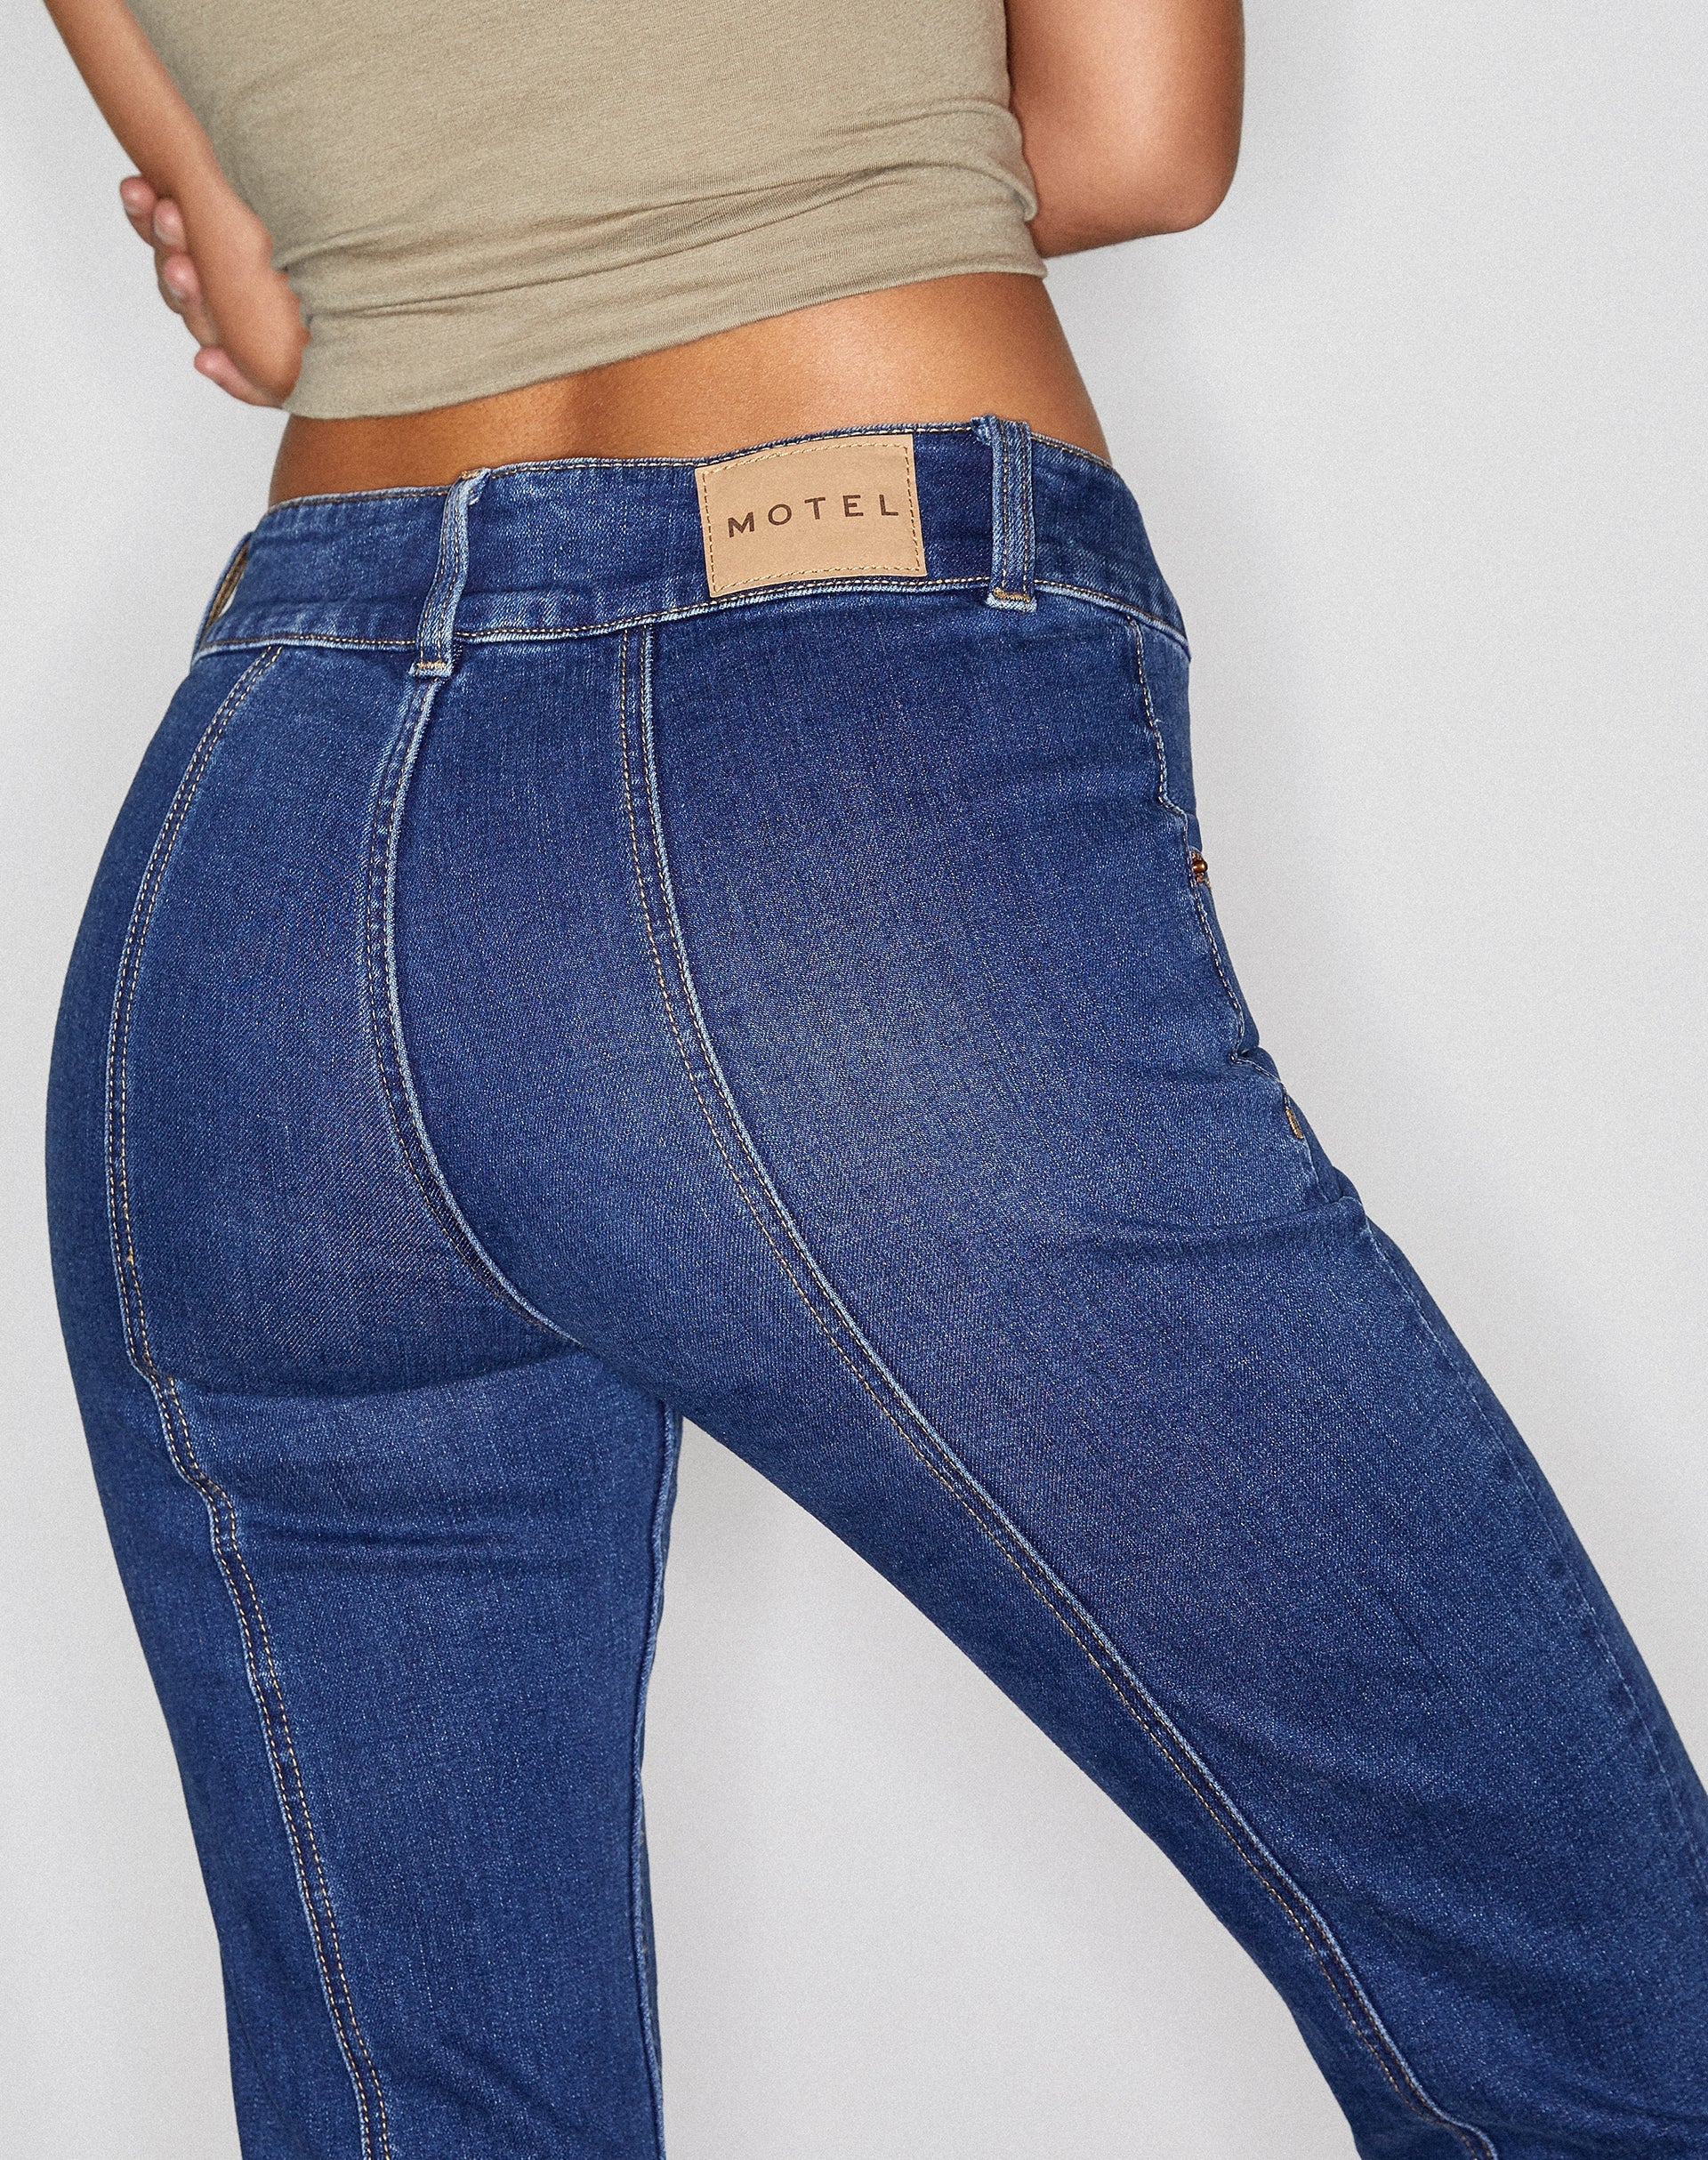 image of Low Rise Seam Jeans in 90's Indigo